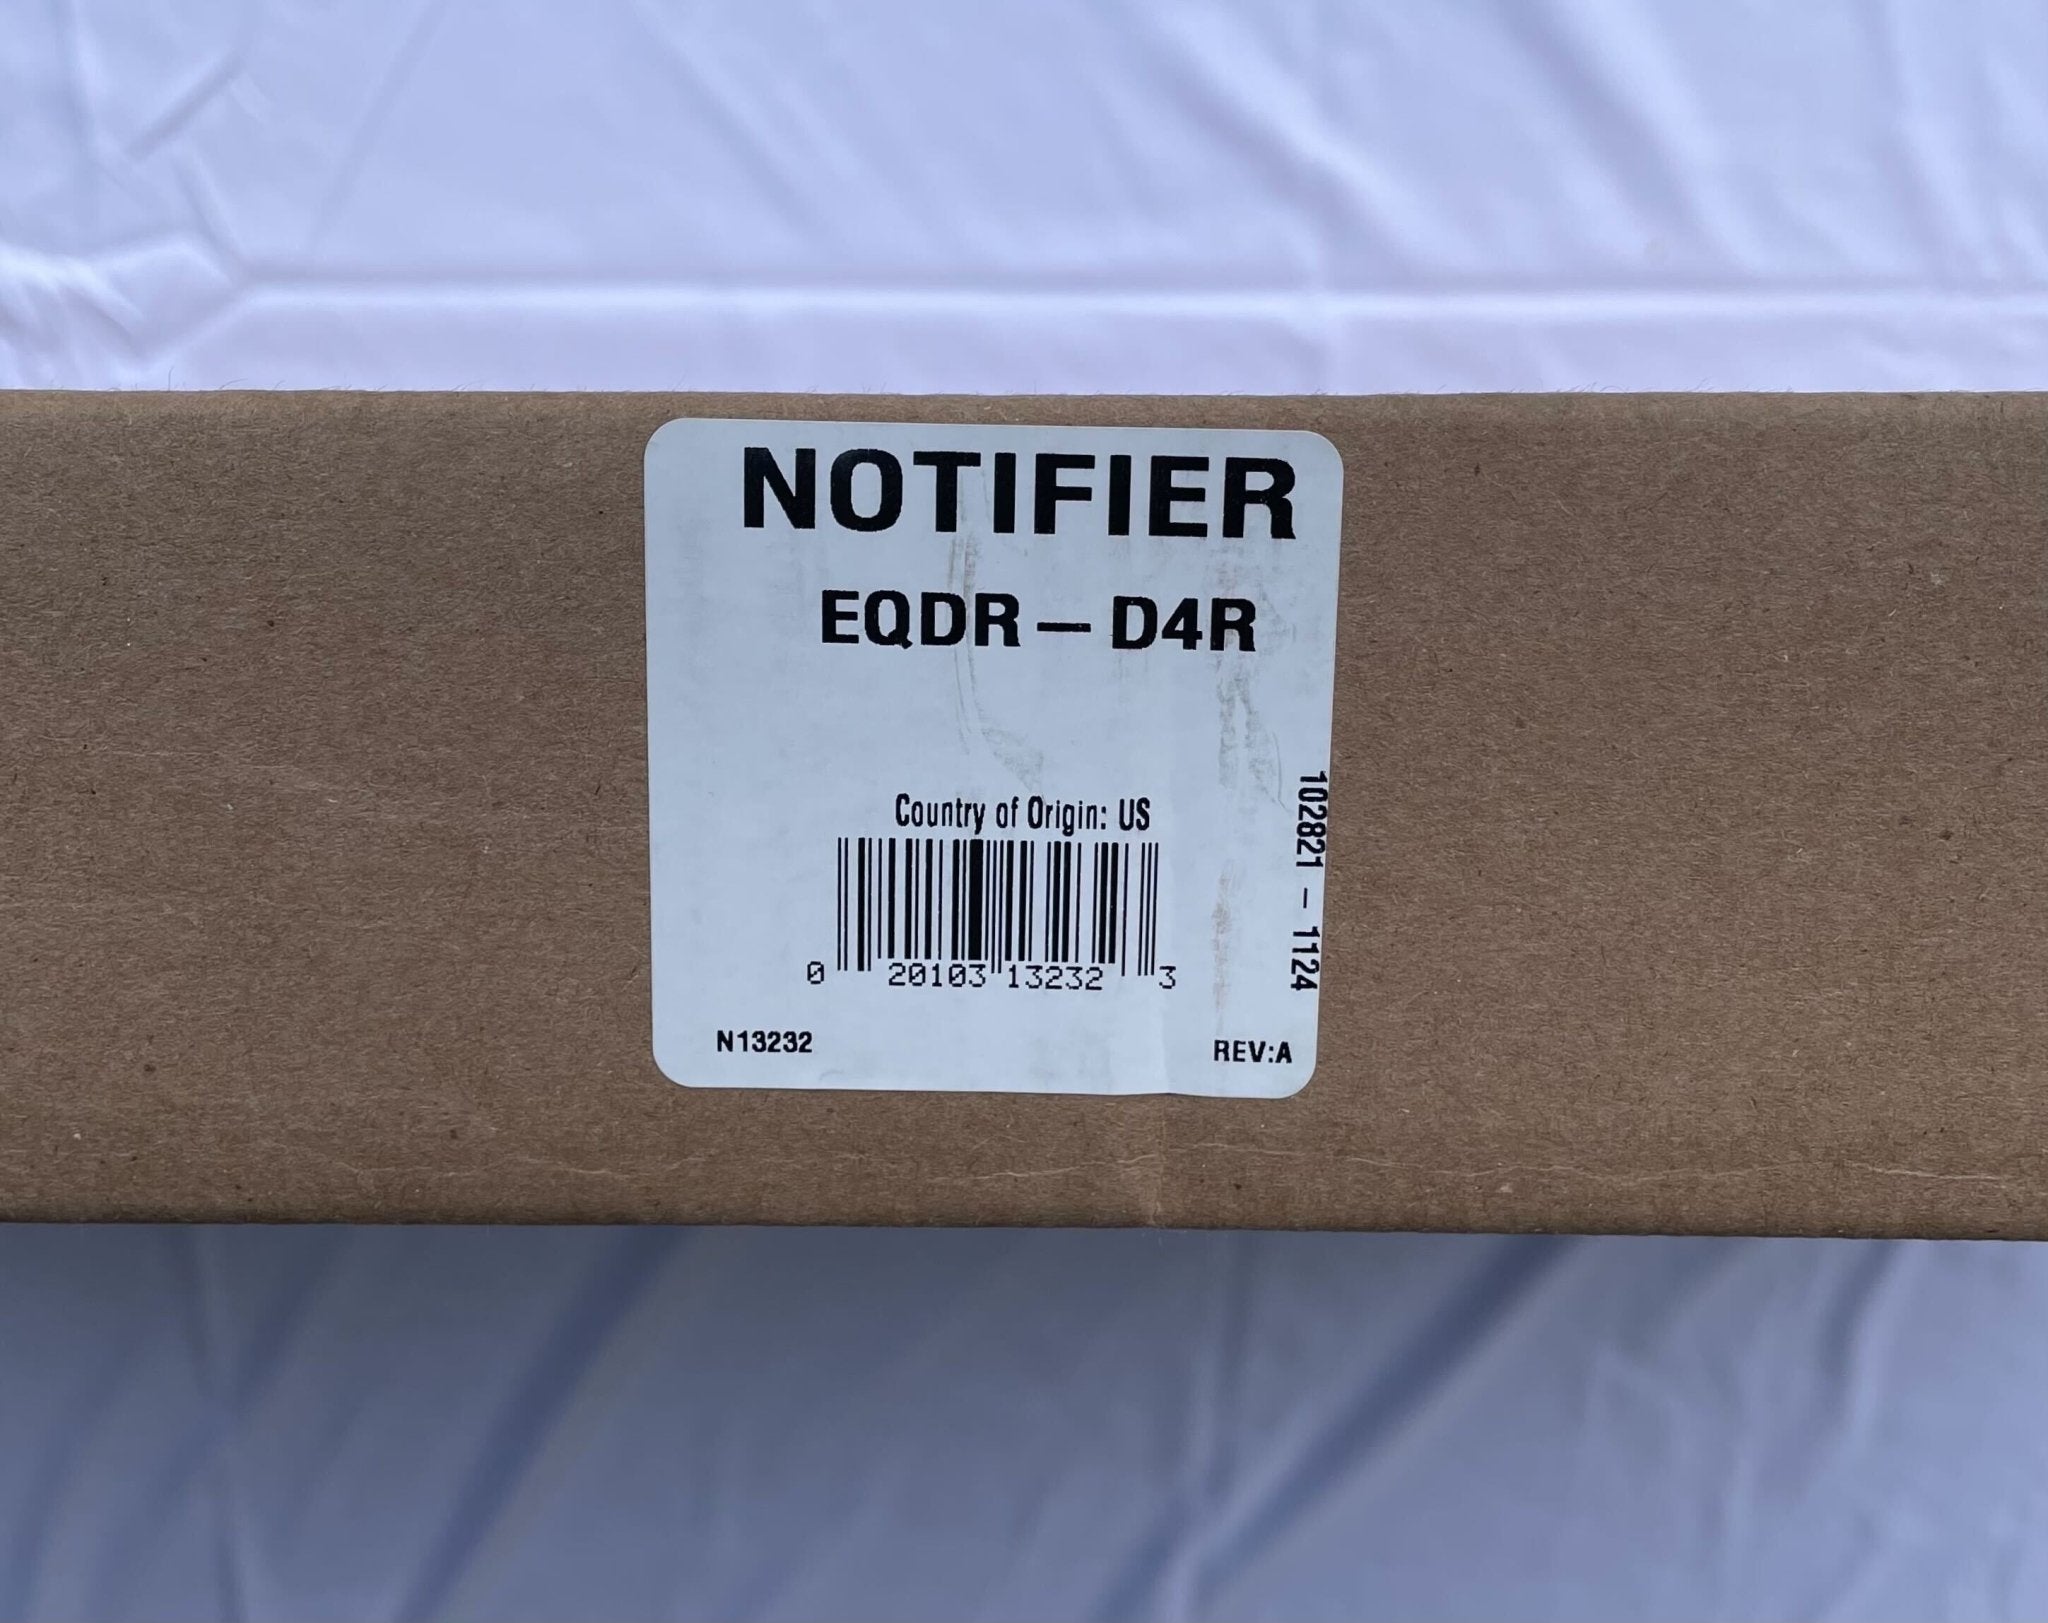 Notifier EQDR-D4R - The Fire Alarm Supplier